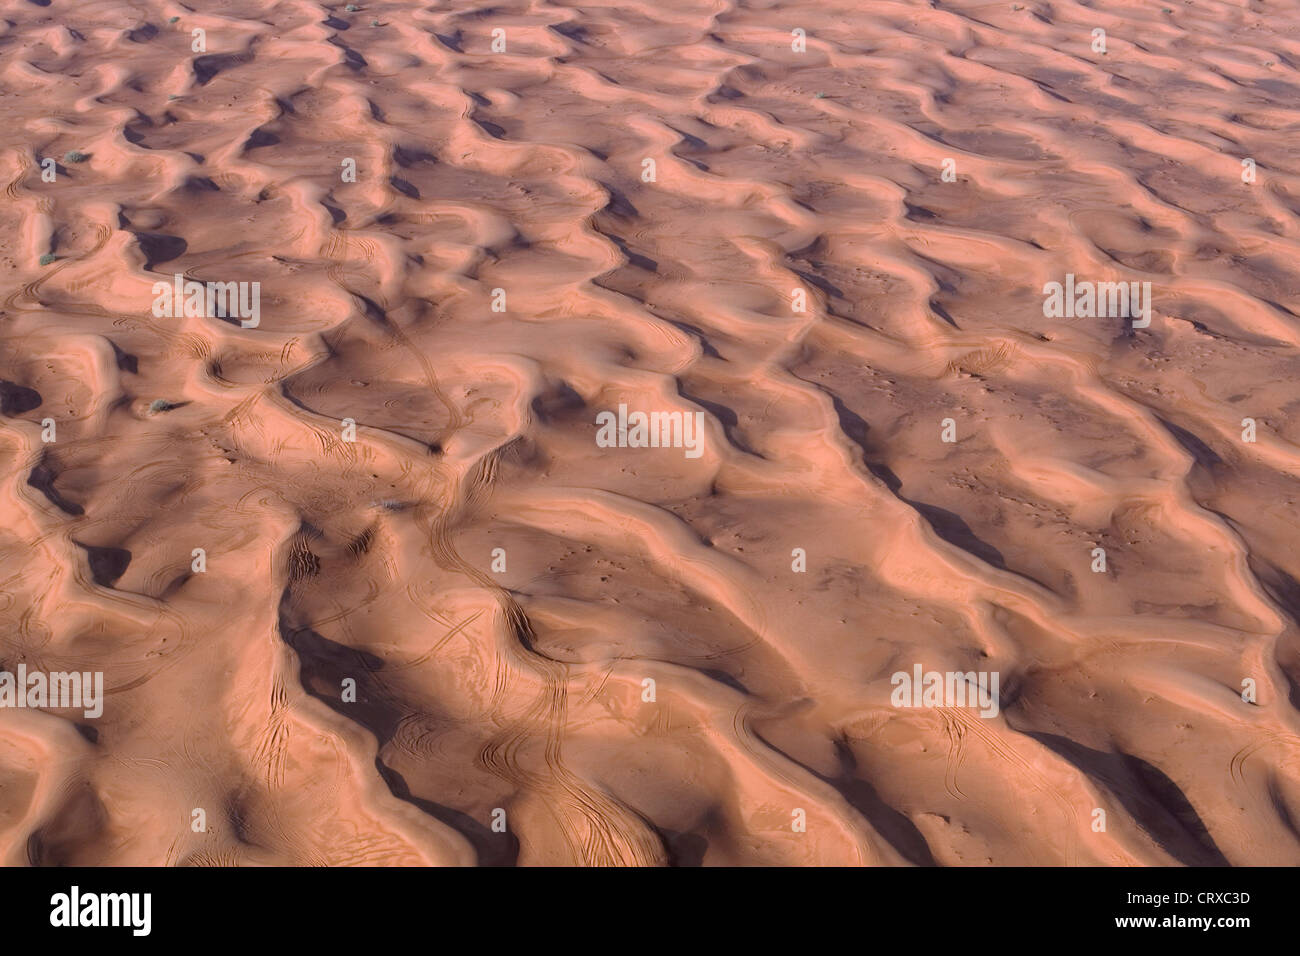 Wellige Dünen der Wüste Sand gesehen von einem Heißluftballon, Wadi Faya, Dubai, Vereinigte Arabische Emirate Stockfoto